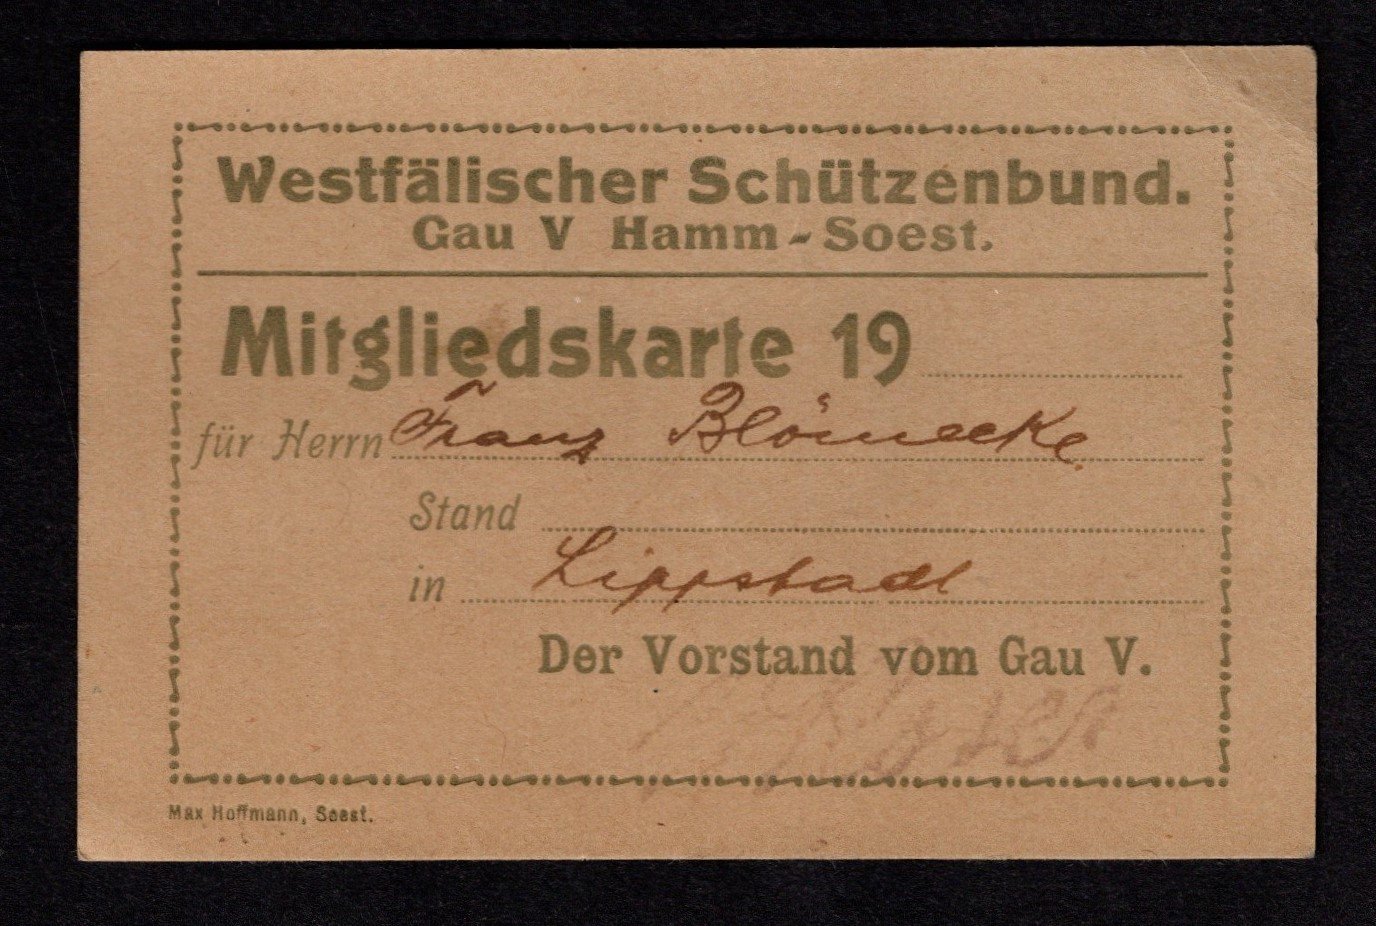 Fotokopie einer Mitgliedskarte des Westfälischen Schützenbundes (Stadtmuseum Lippstadt CC BY-NC-ND)